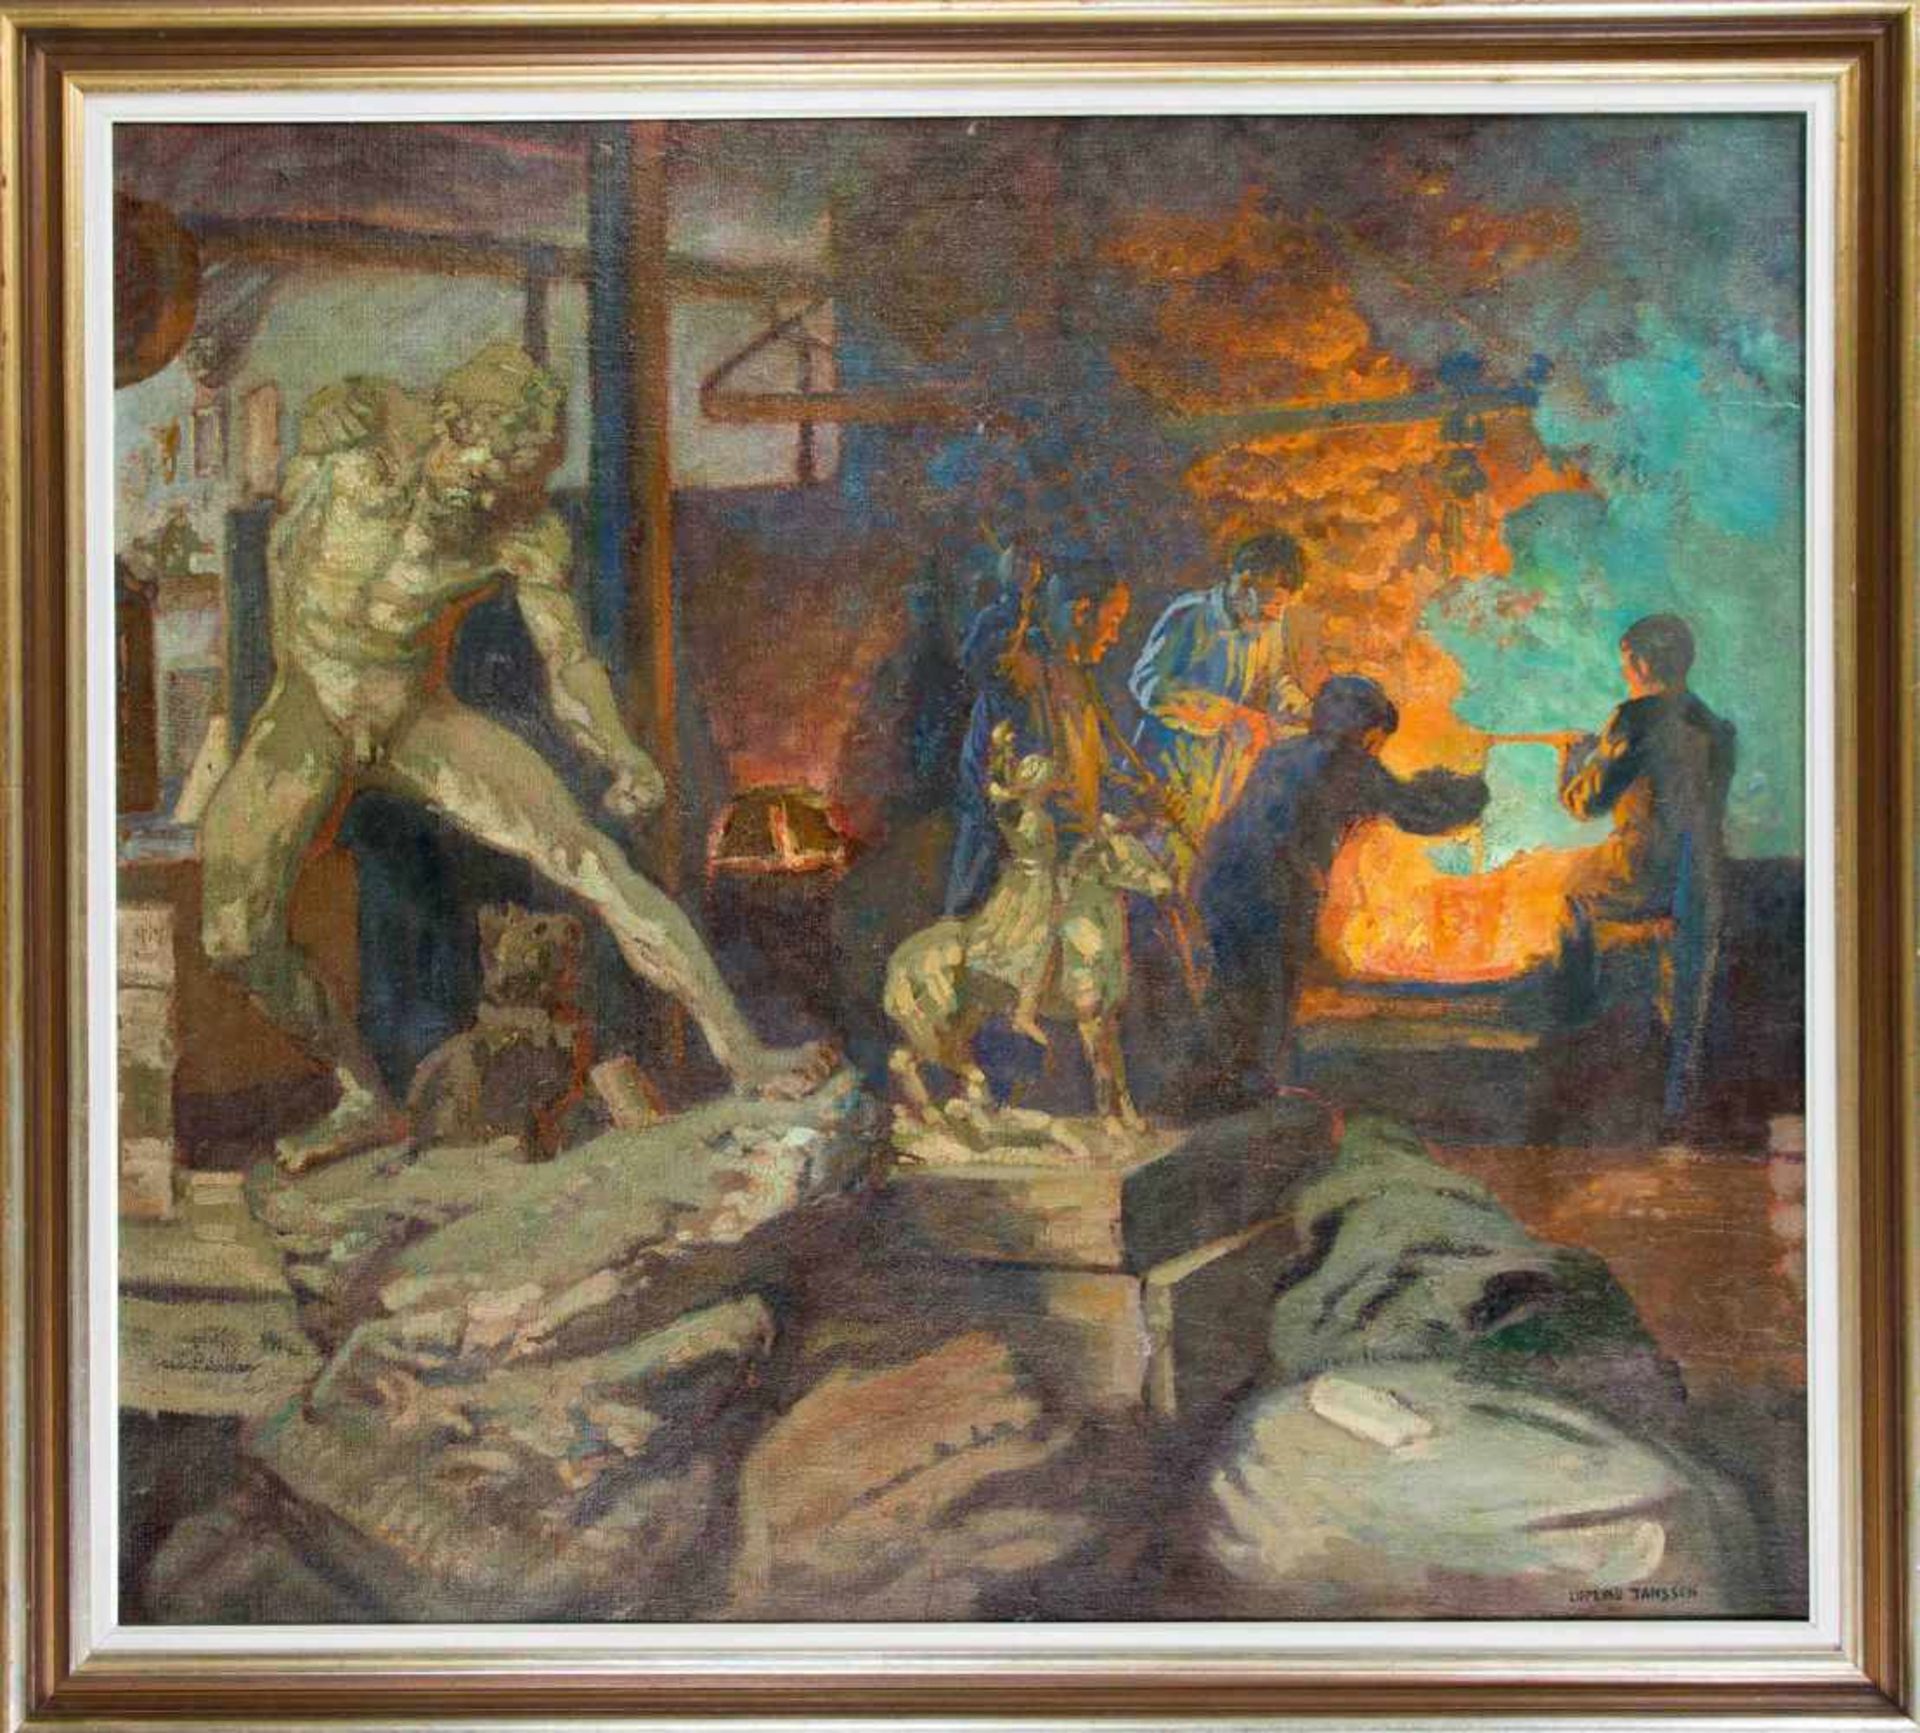 Luplau Janssen (1869-1927), dänischer Genremaler. In der Bronzegiesserei. Vomglutflüssigen Metall